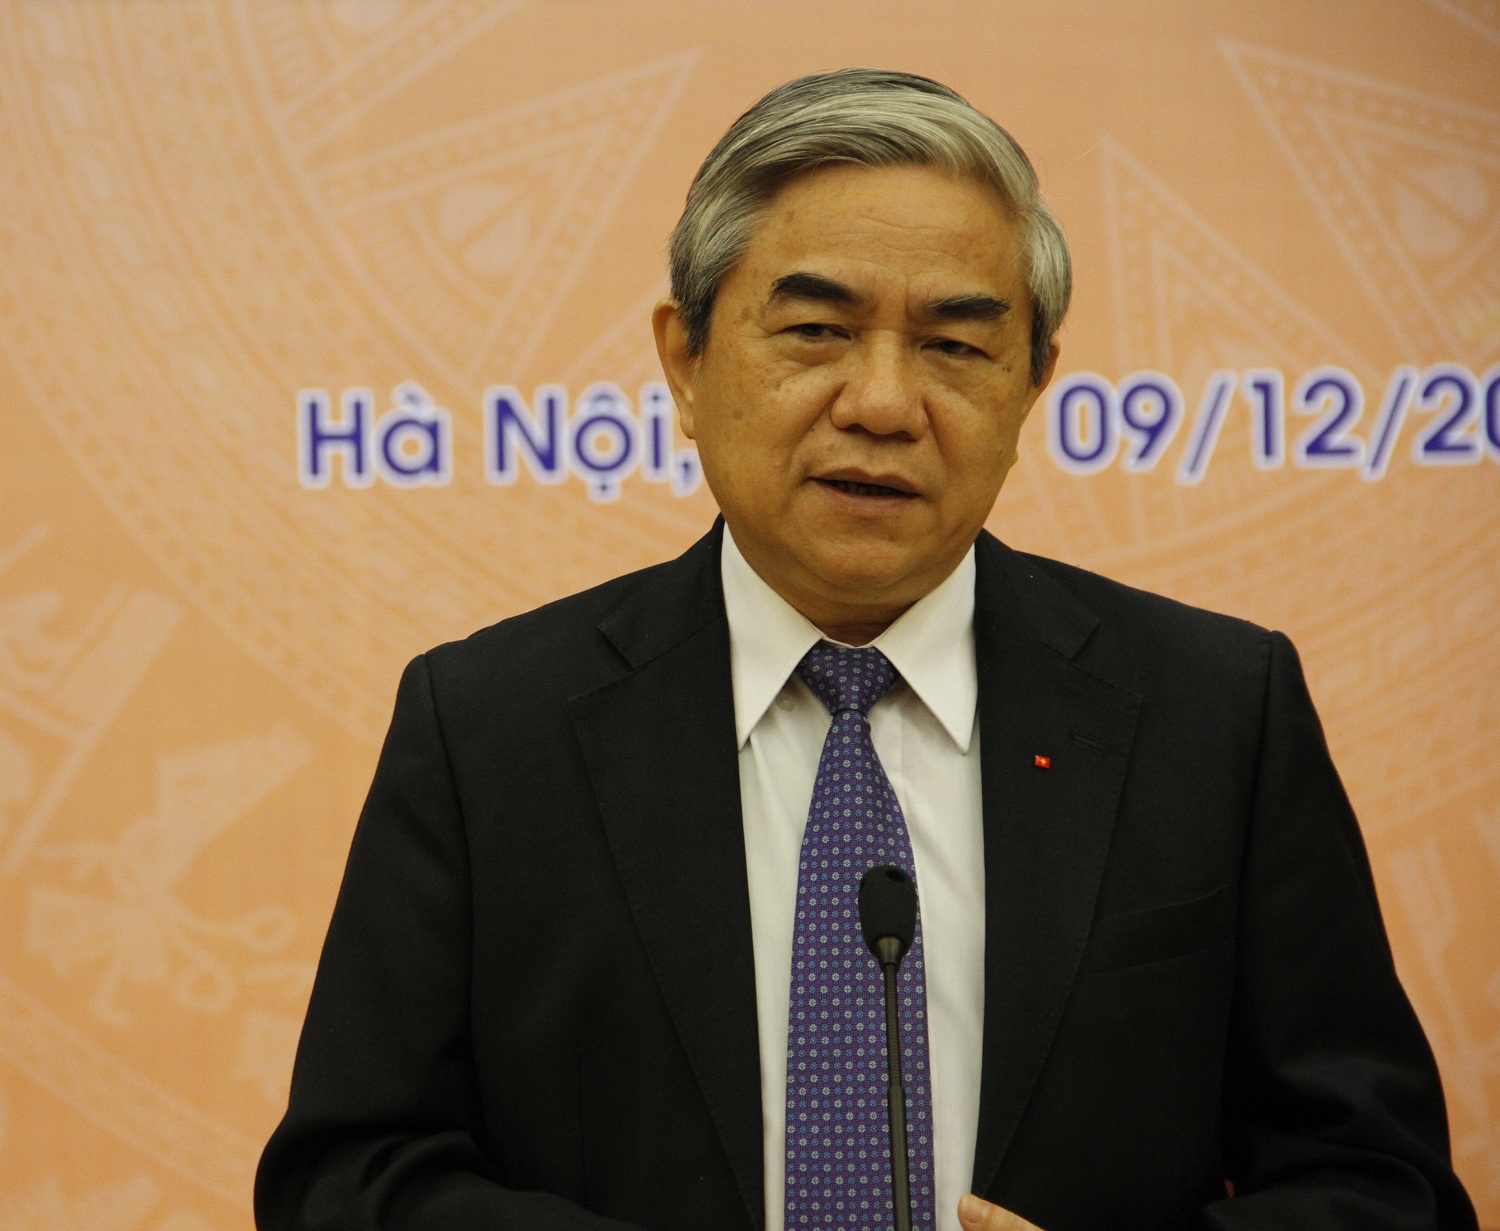 Bộ trưởng Nguyễn Quân cho rằng làm khoa học phải chấp nhận rủi ro và mạo hiểm